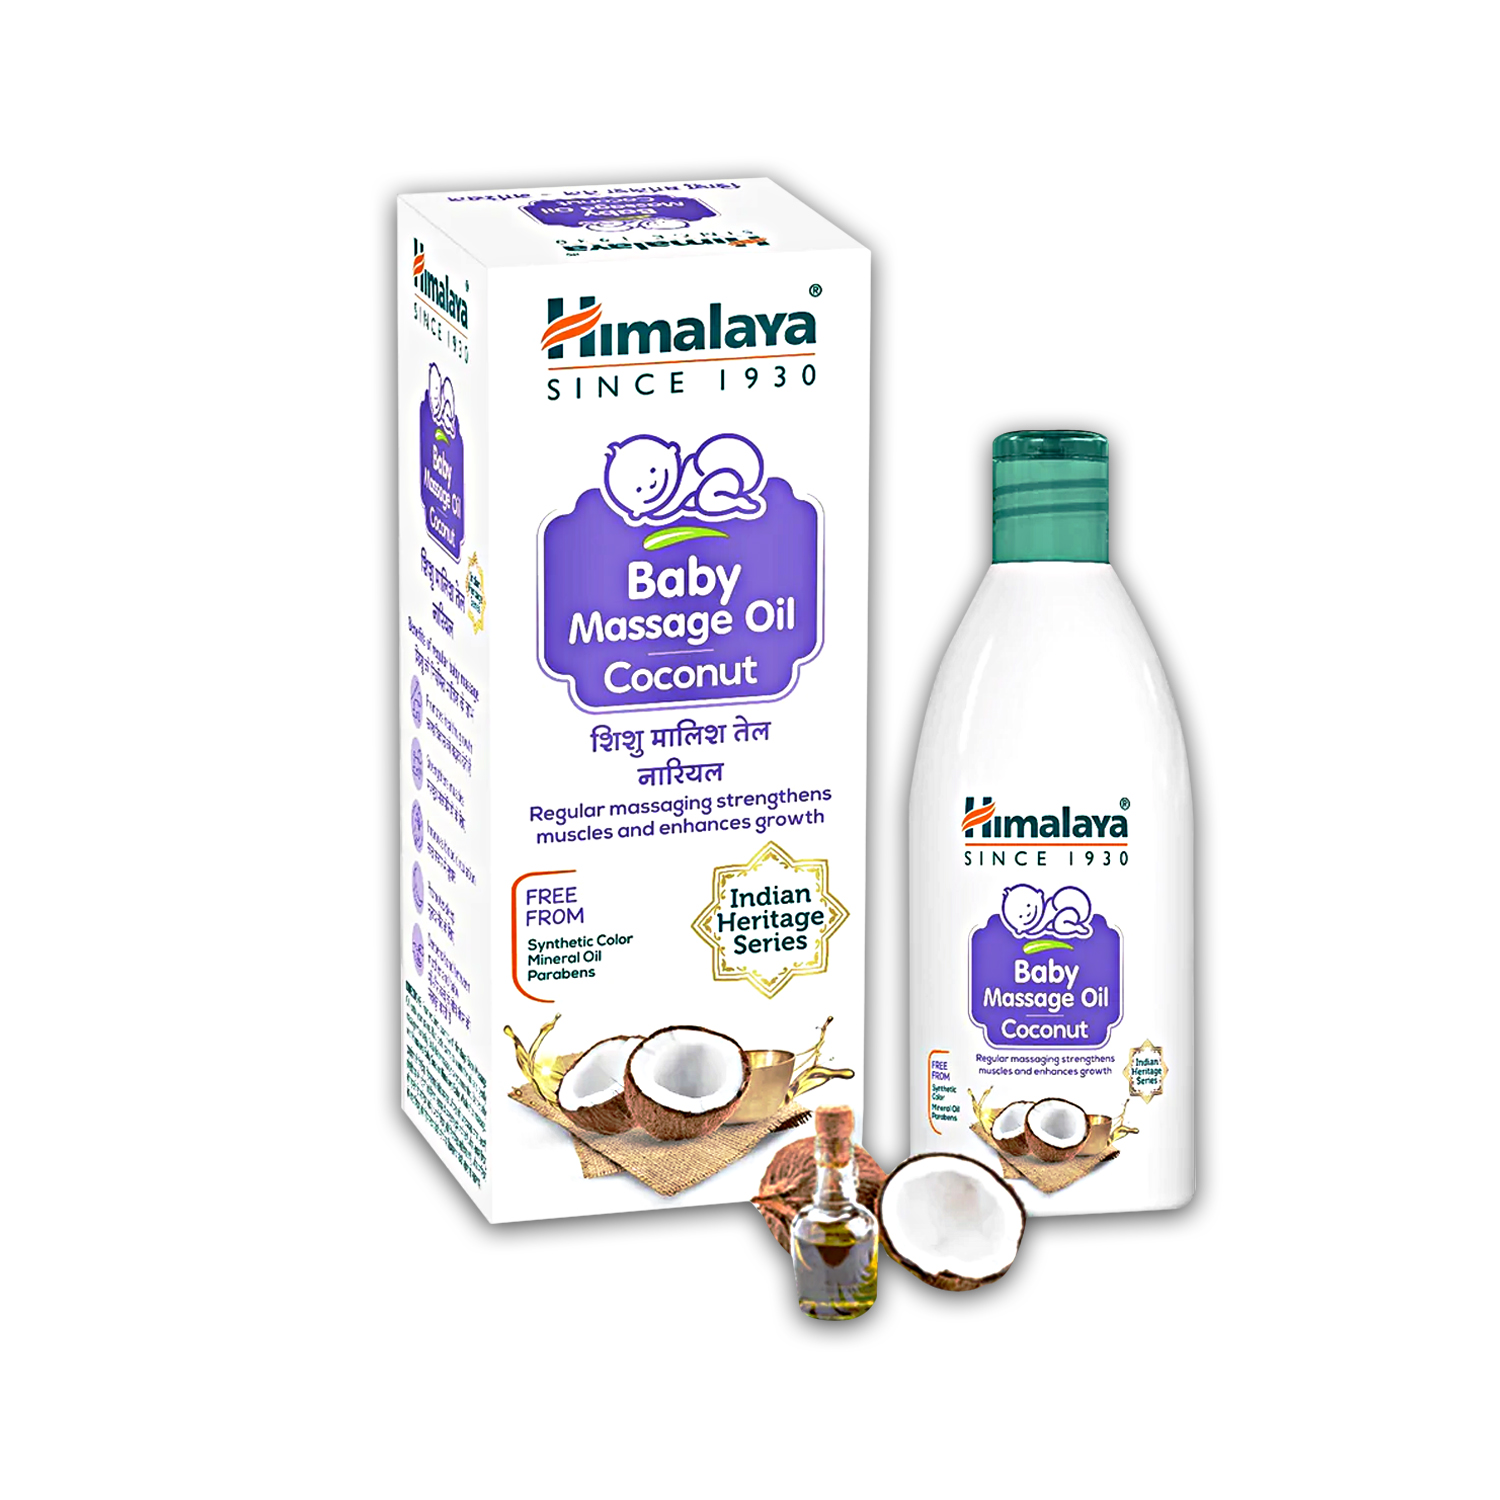 Himalaya Baby Hair oil Reviews